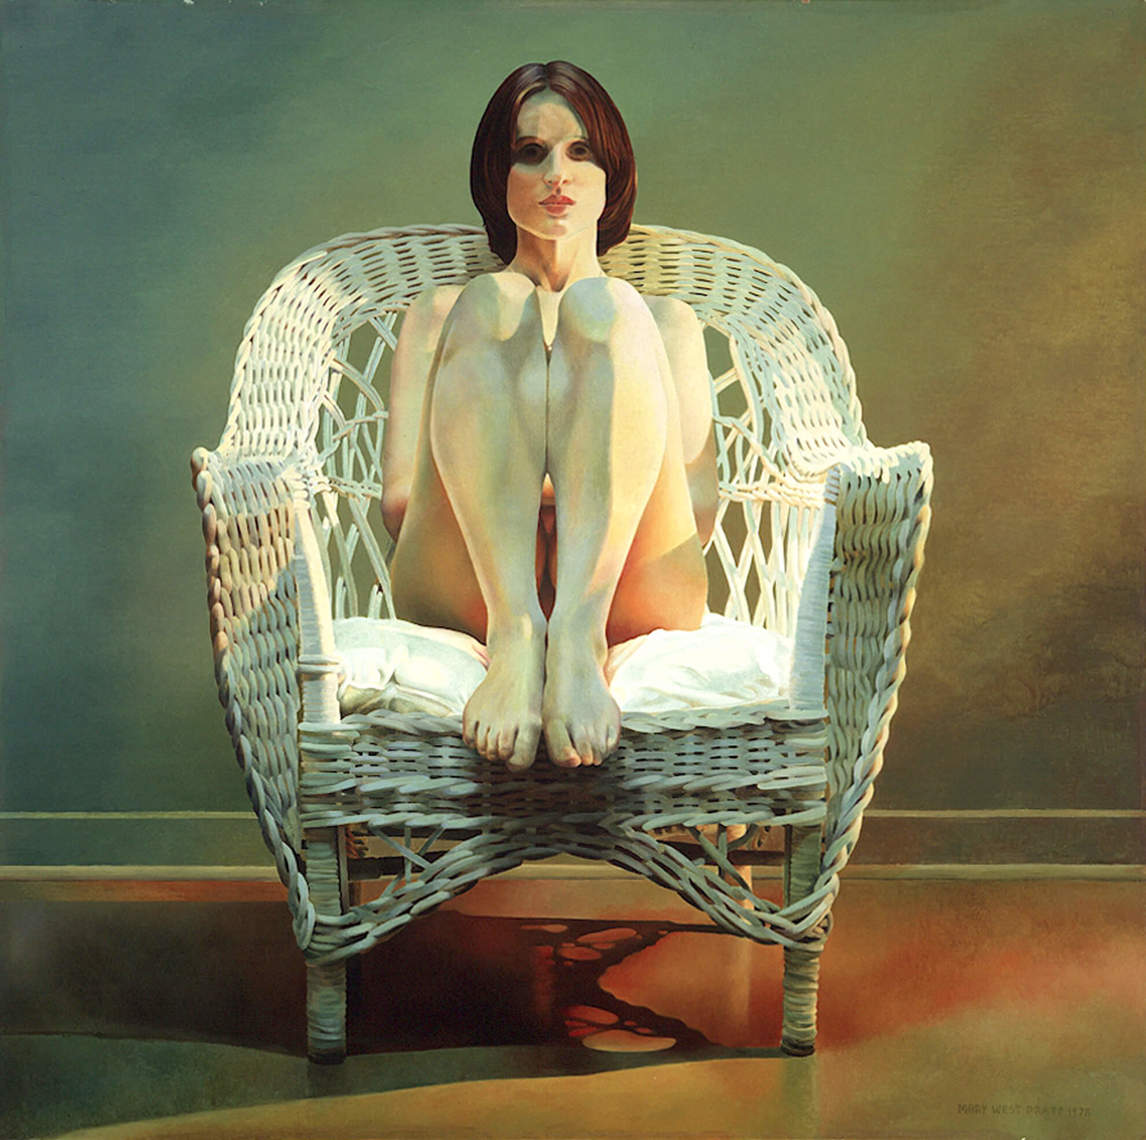 Mary Pratt, Girl in Wicker Chair, 1978